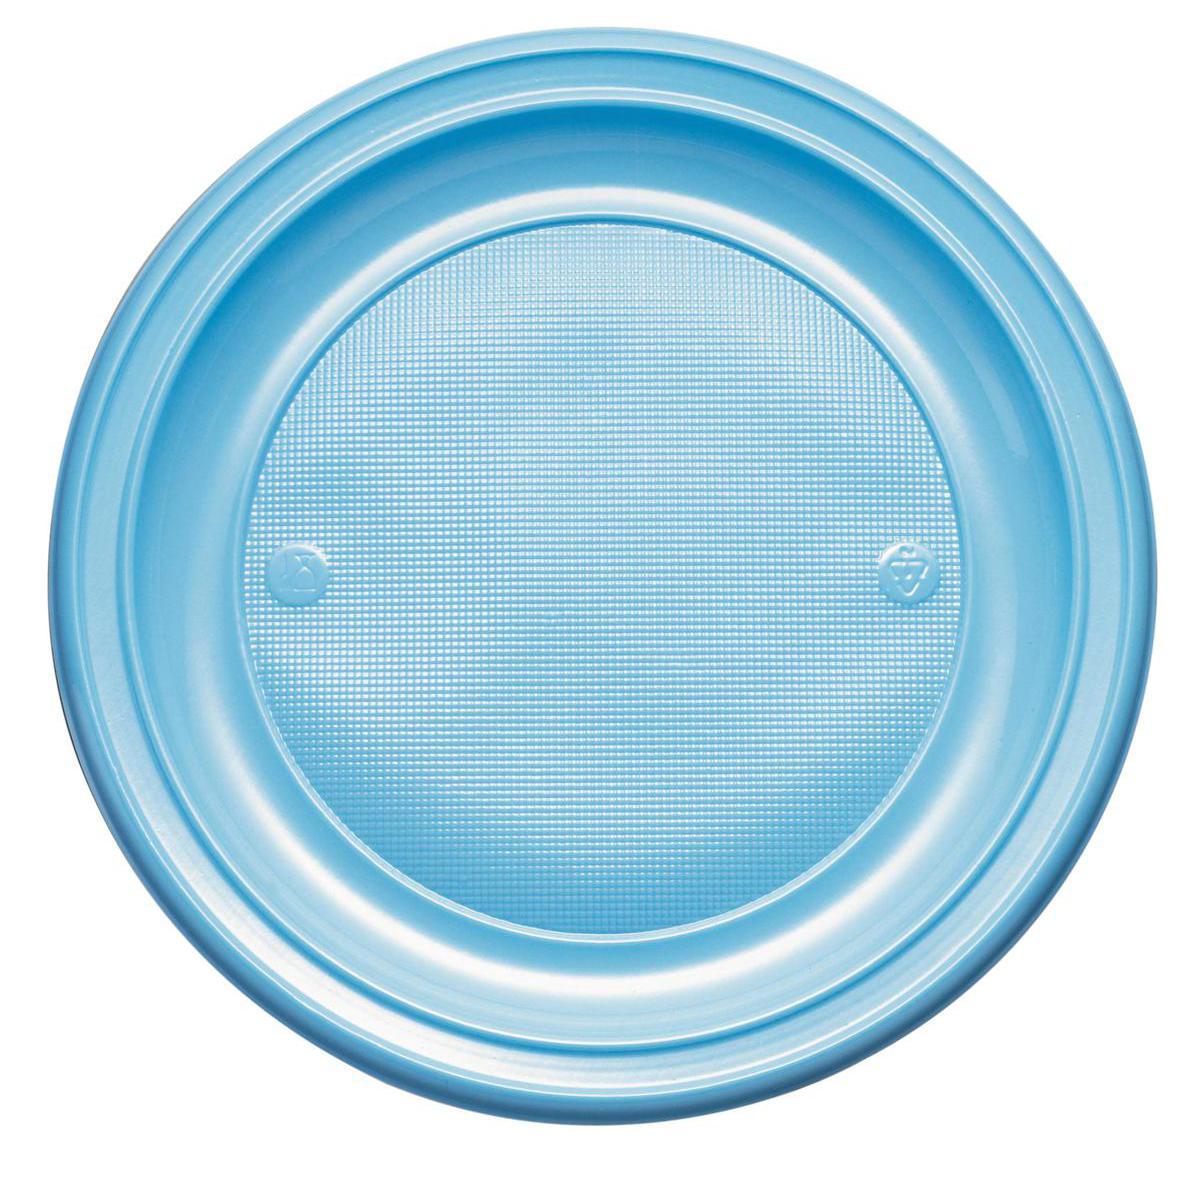 Lot de 20 assiettes en plastique - 22 cm -Polystyrène- Bleu lagon